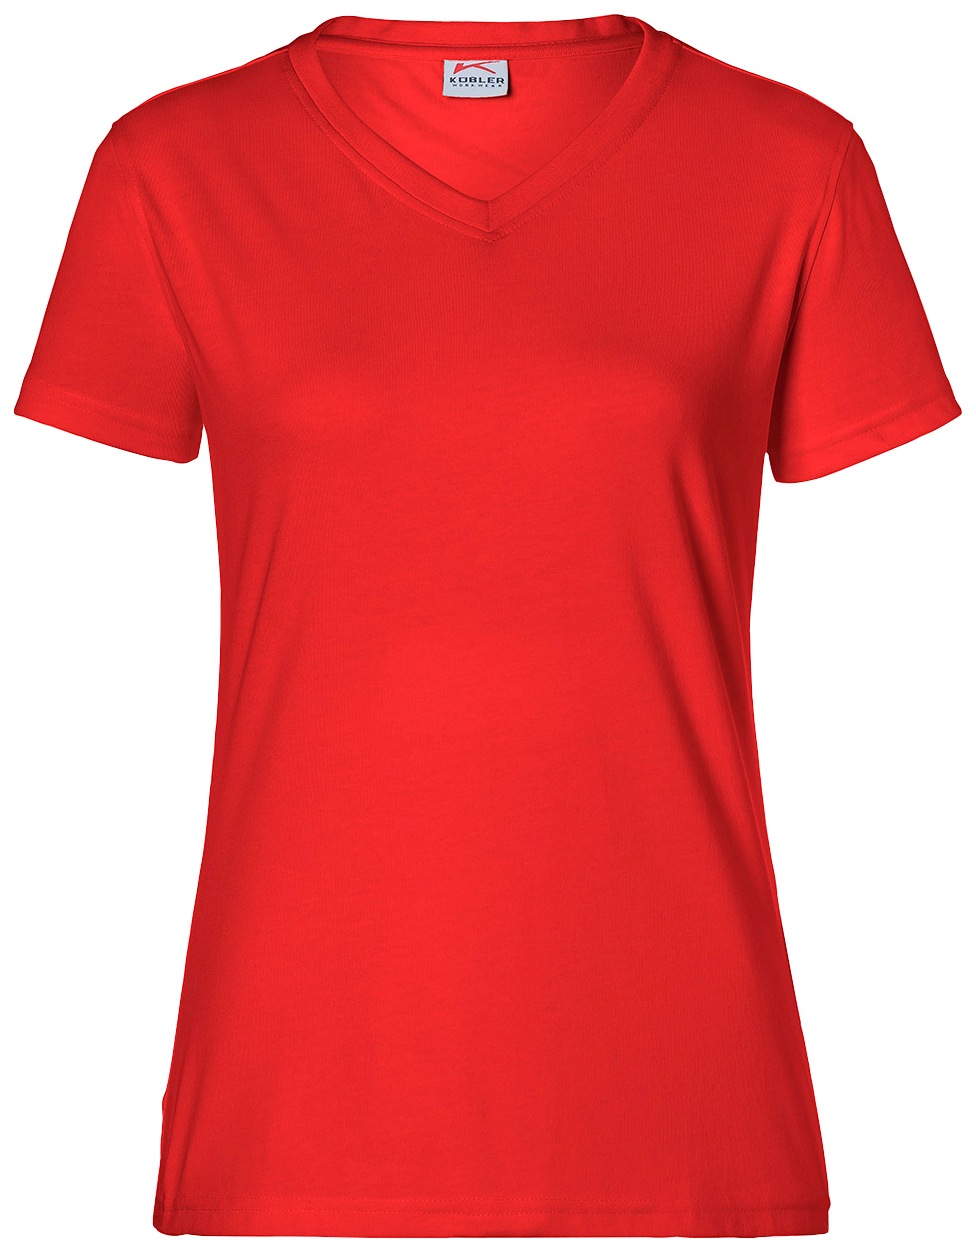 Kübler T-Shirt, für Damen, bei 4XL - OTTOversand XS Größe